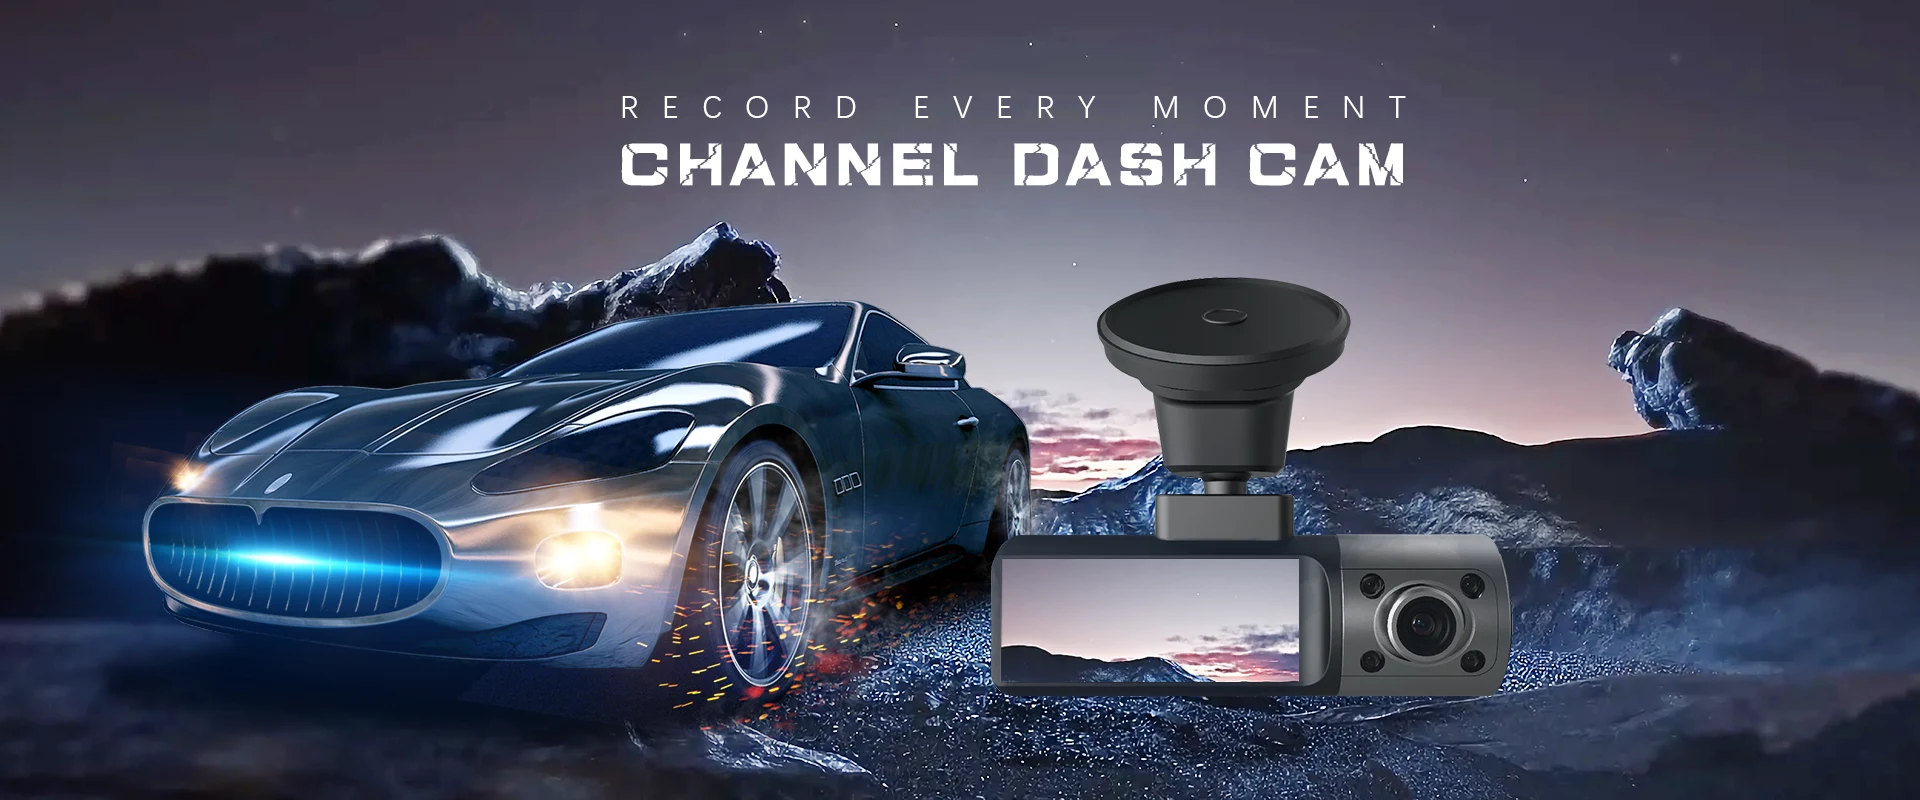 Dash Cam Manufacturers